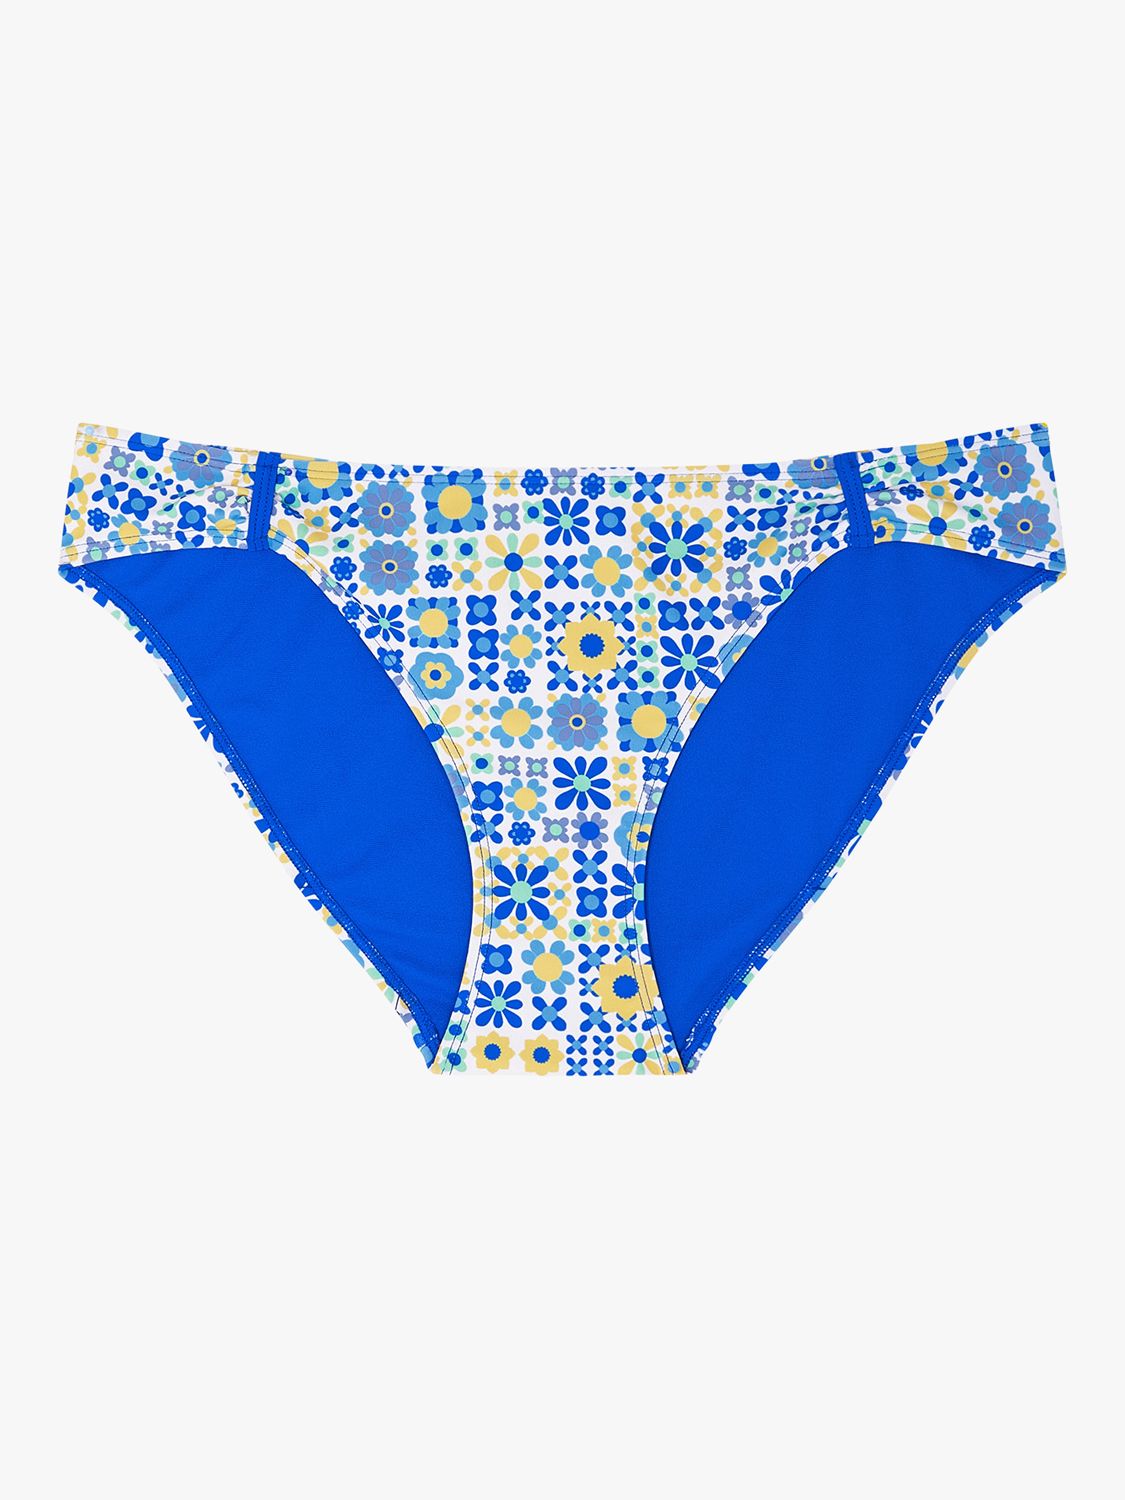 Accessorize Retro Tiled Bikini Bottoms, Blue/Multi, 6